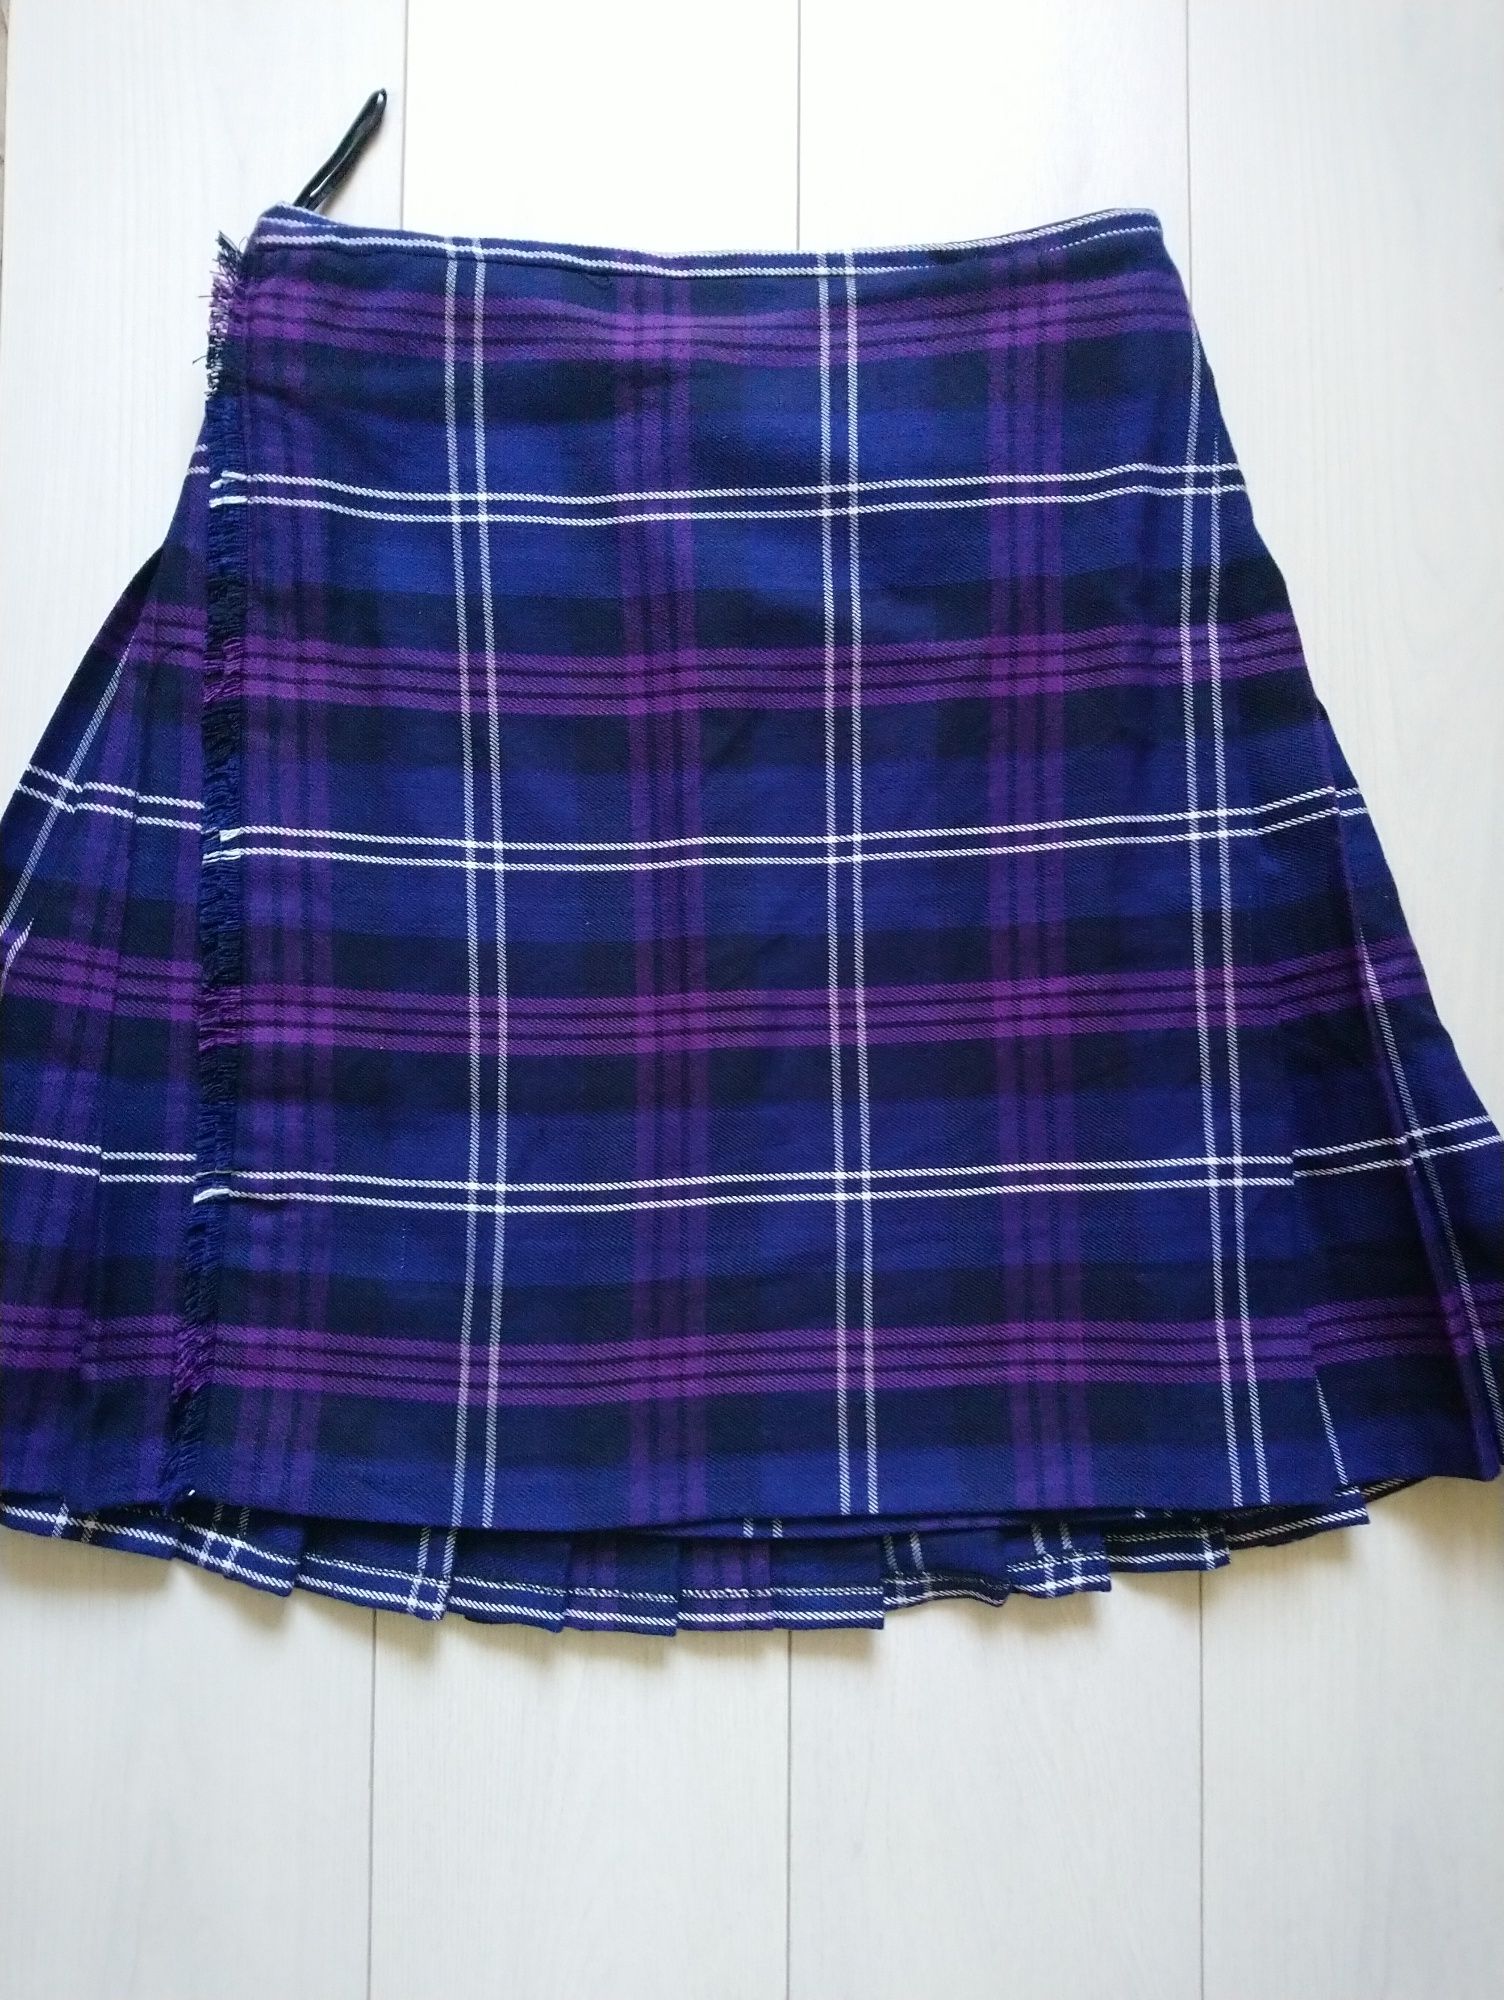 Шотландський кілт Scottish Highland Kilt 34 розмір